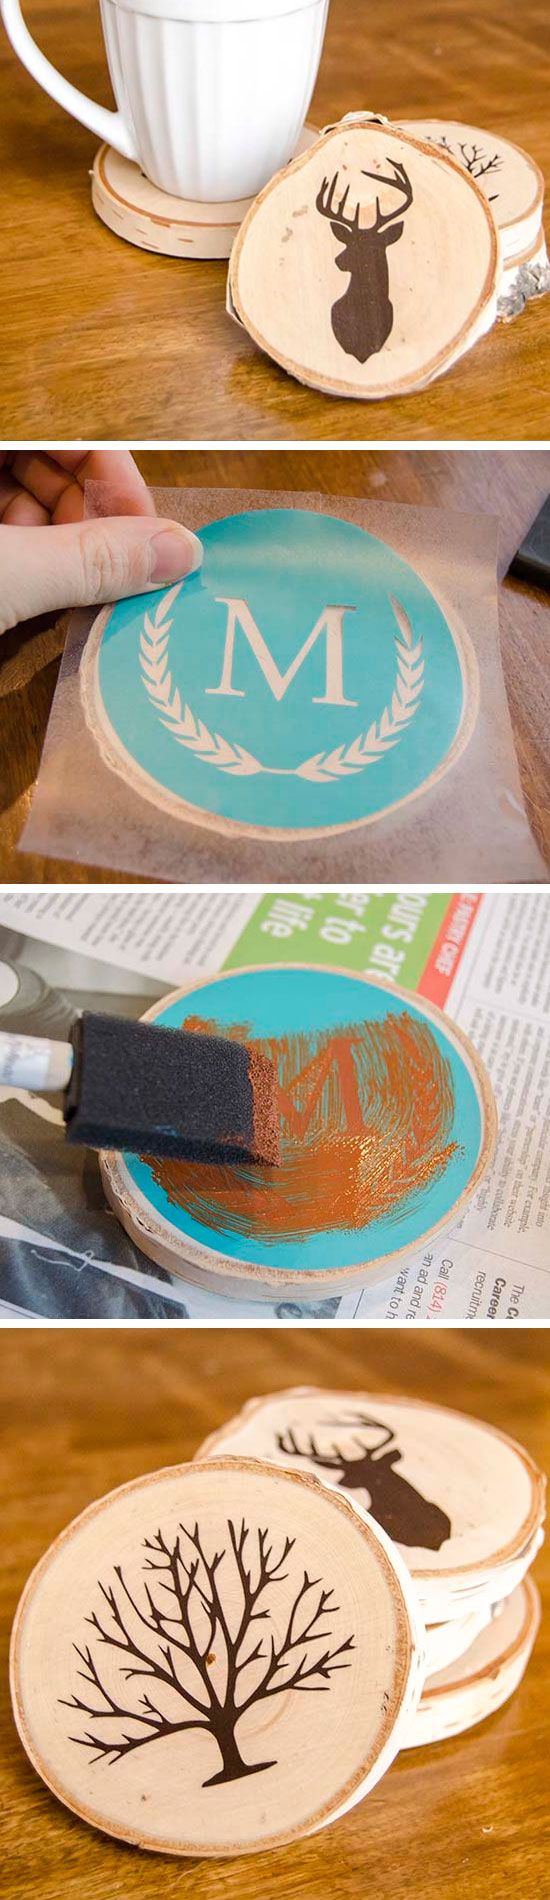 DIY Painted Wood Slice Coasters